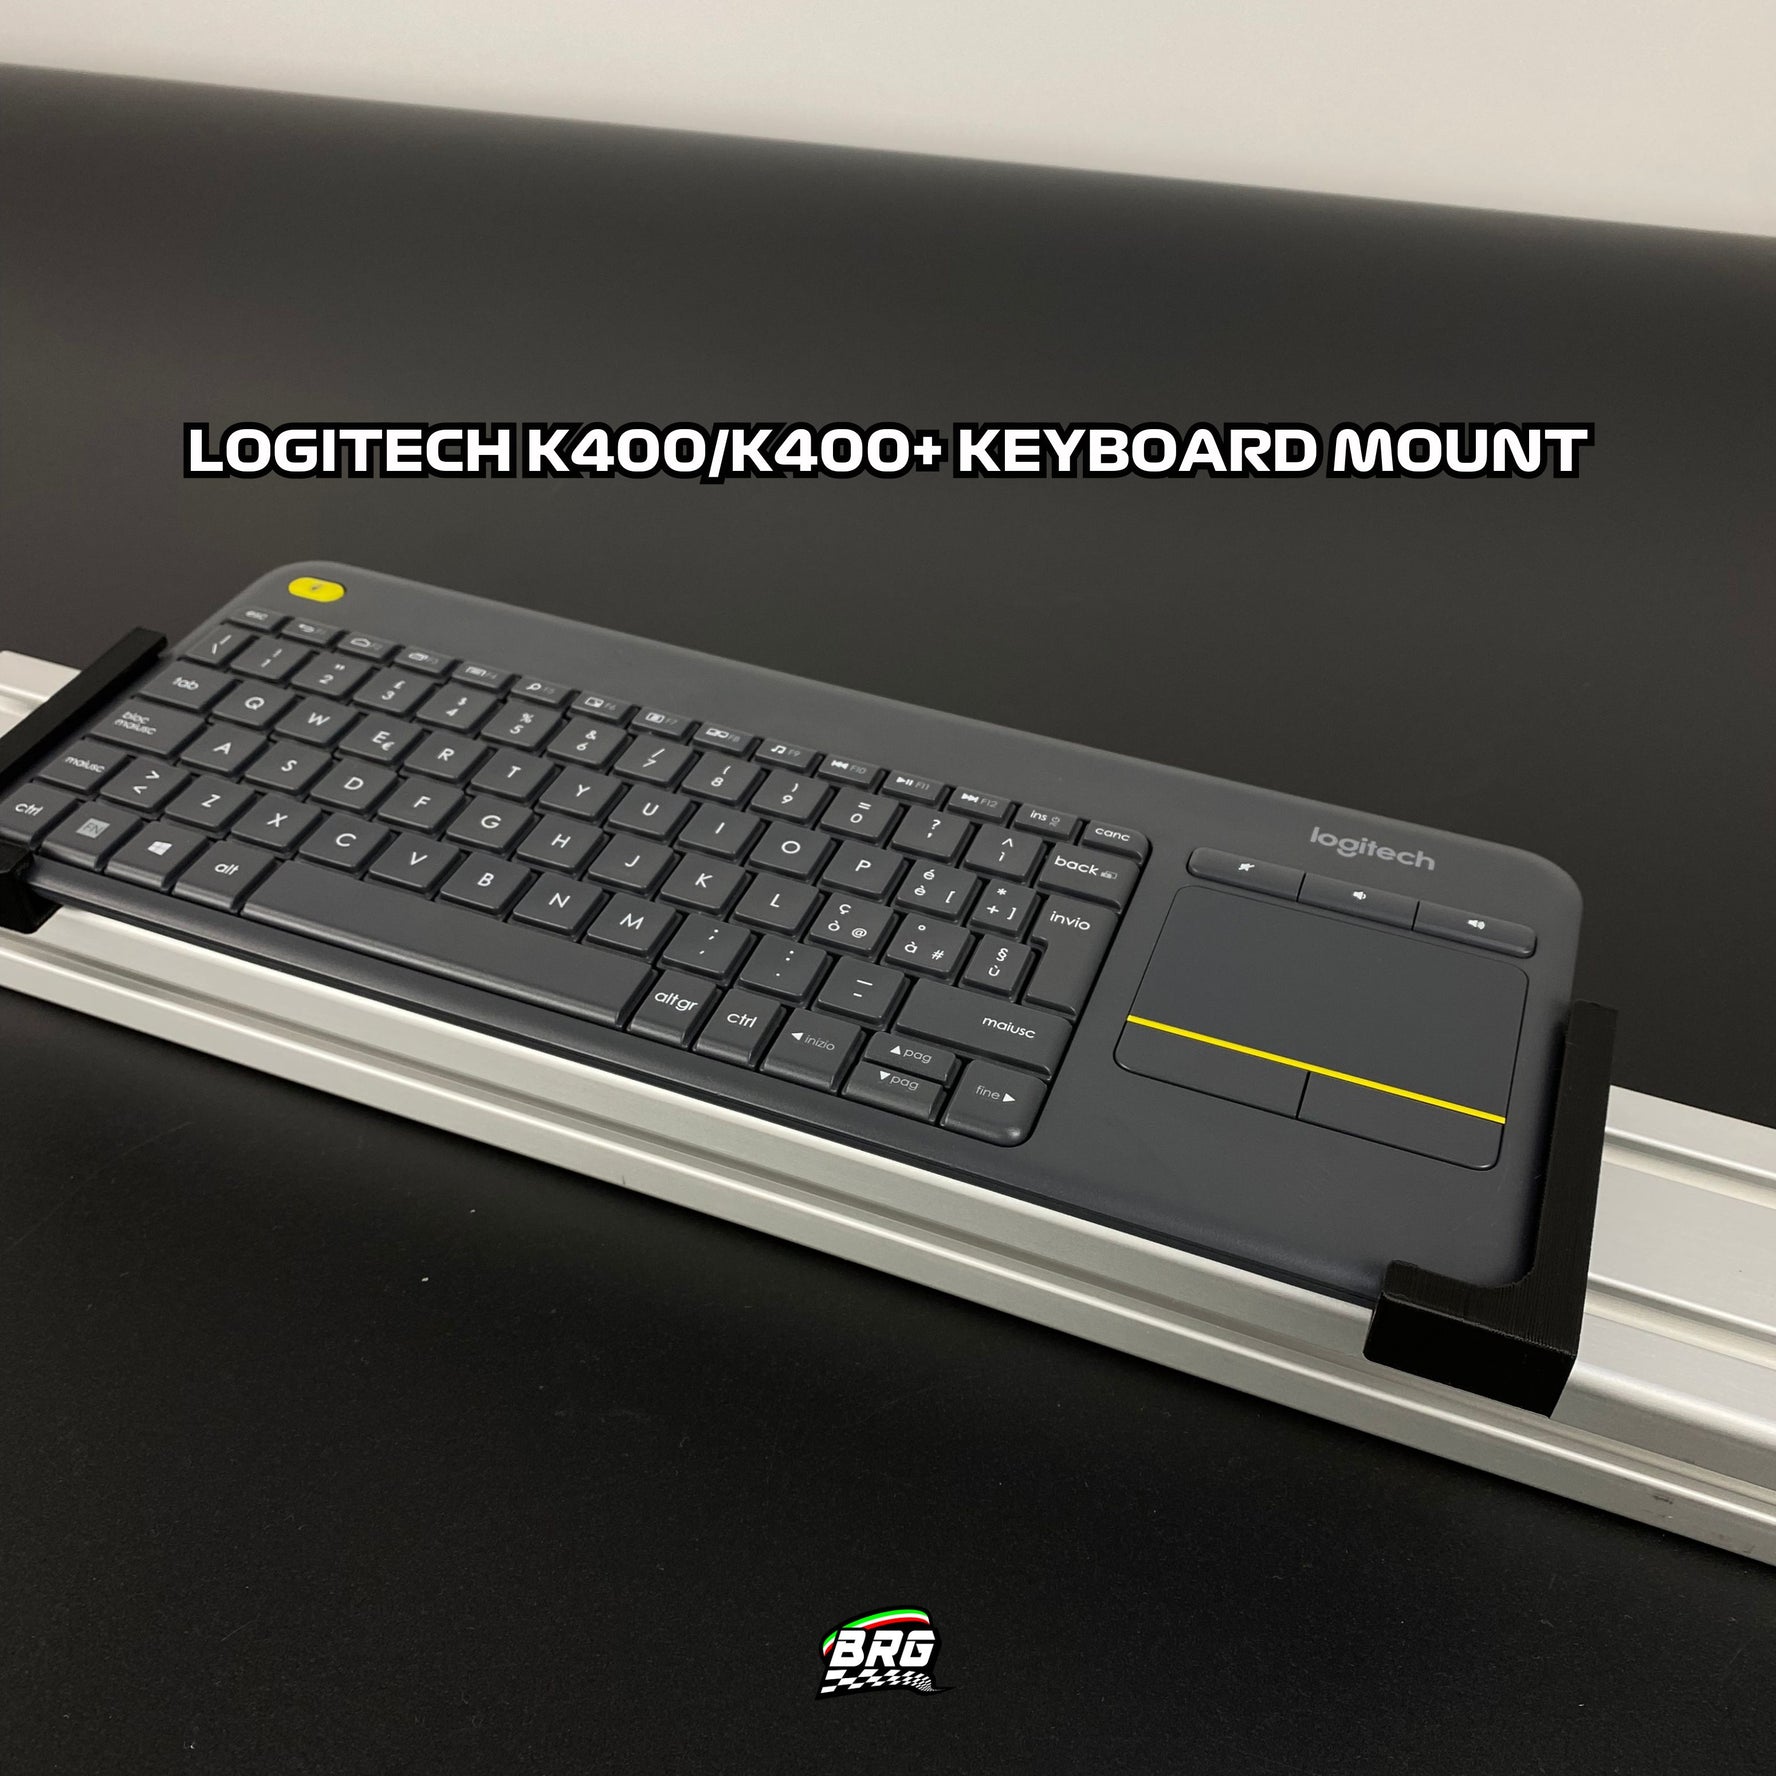 Keyboard Holder for Logitech K400 - K400+